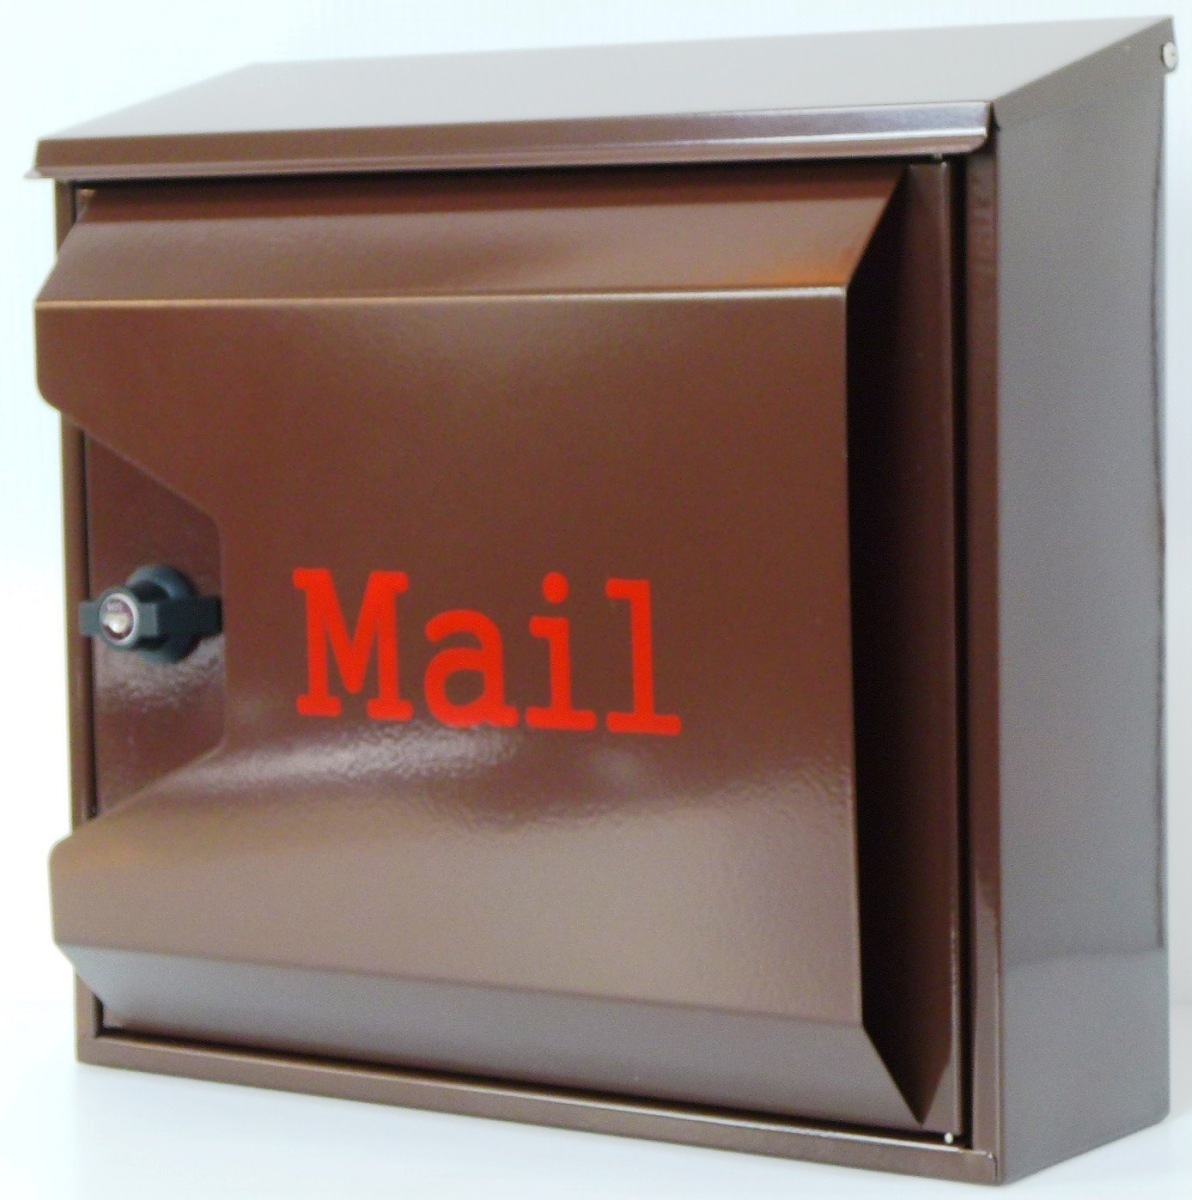 郵便ポスト郵便受けおしゃれかわいい人気北欧モダンデザイン大型メールボックス 壁掛けプレミアムステンレス ブラウン色ポストpm042